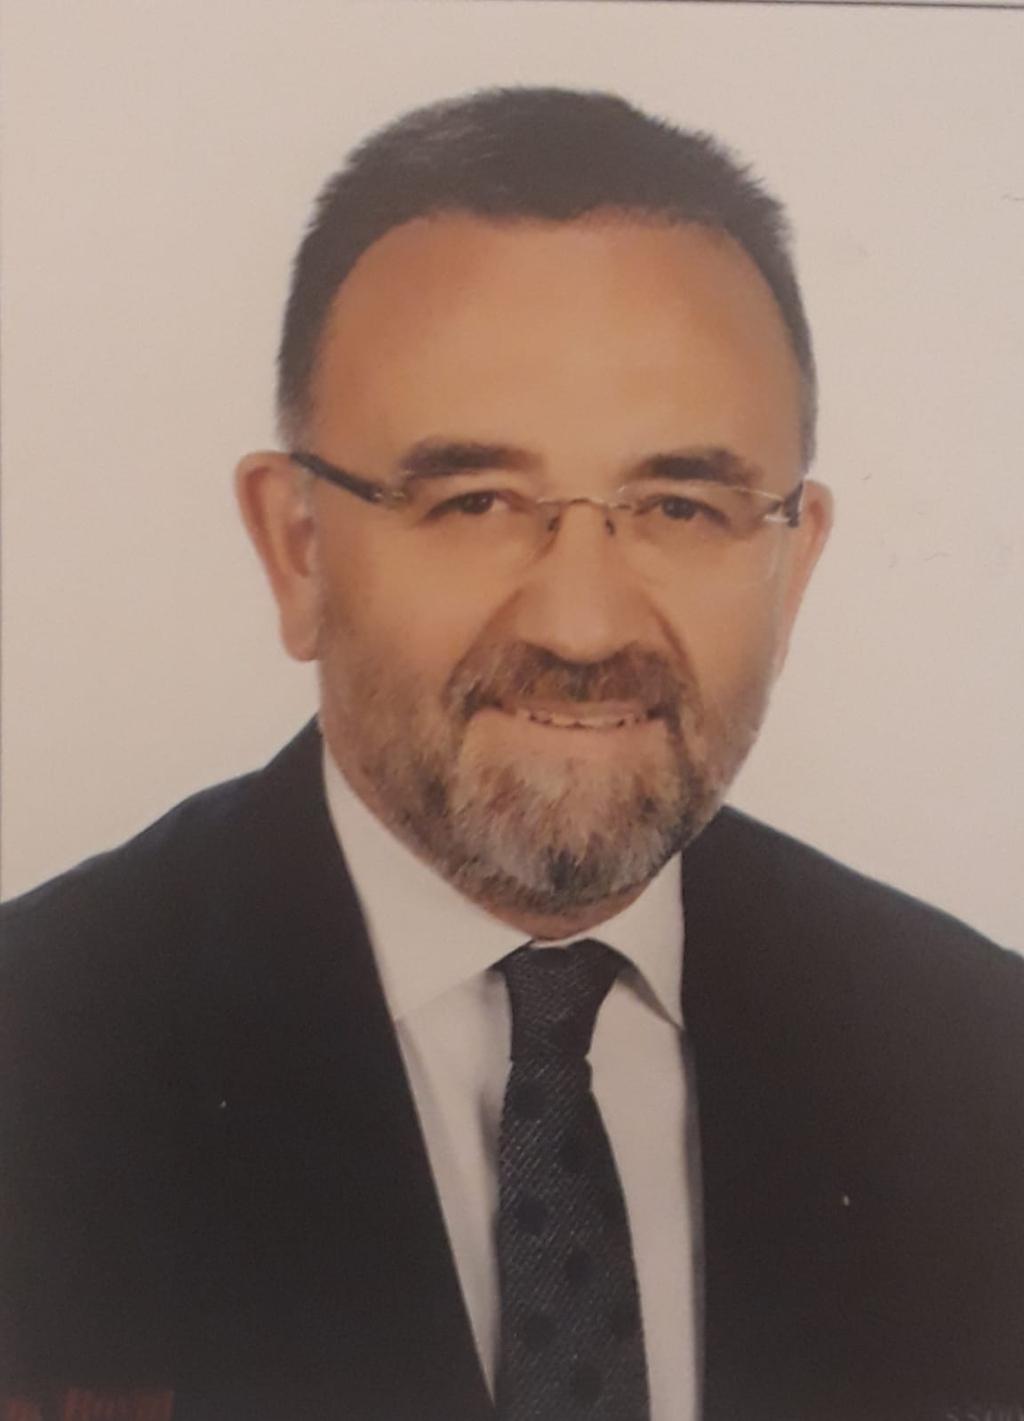 Savaş Çolakoğlu Ankara SKAL No 086002024 Yönetim Kurulu (Federasyon) Başkanı Önceki Görevleri Federasyon Yönetim Kurulu Sayman Üye (2015-2017) Federasyon Yönetim Kurulu Genel Sekreter (2011-2013)